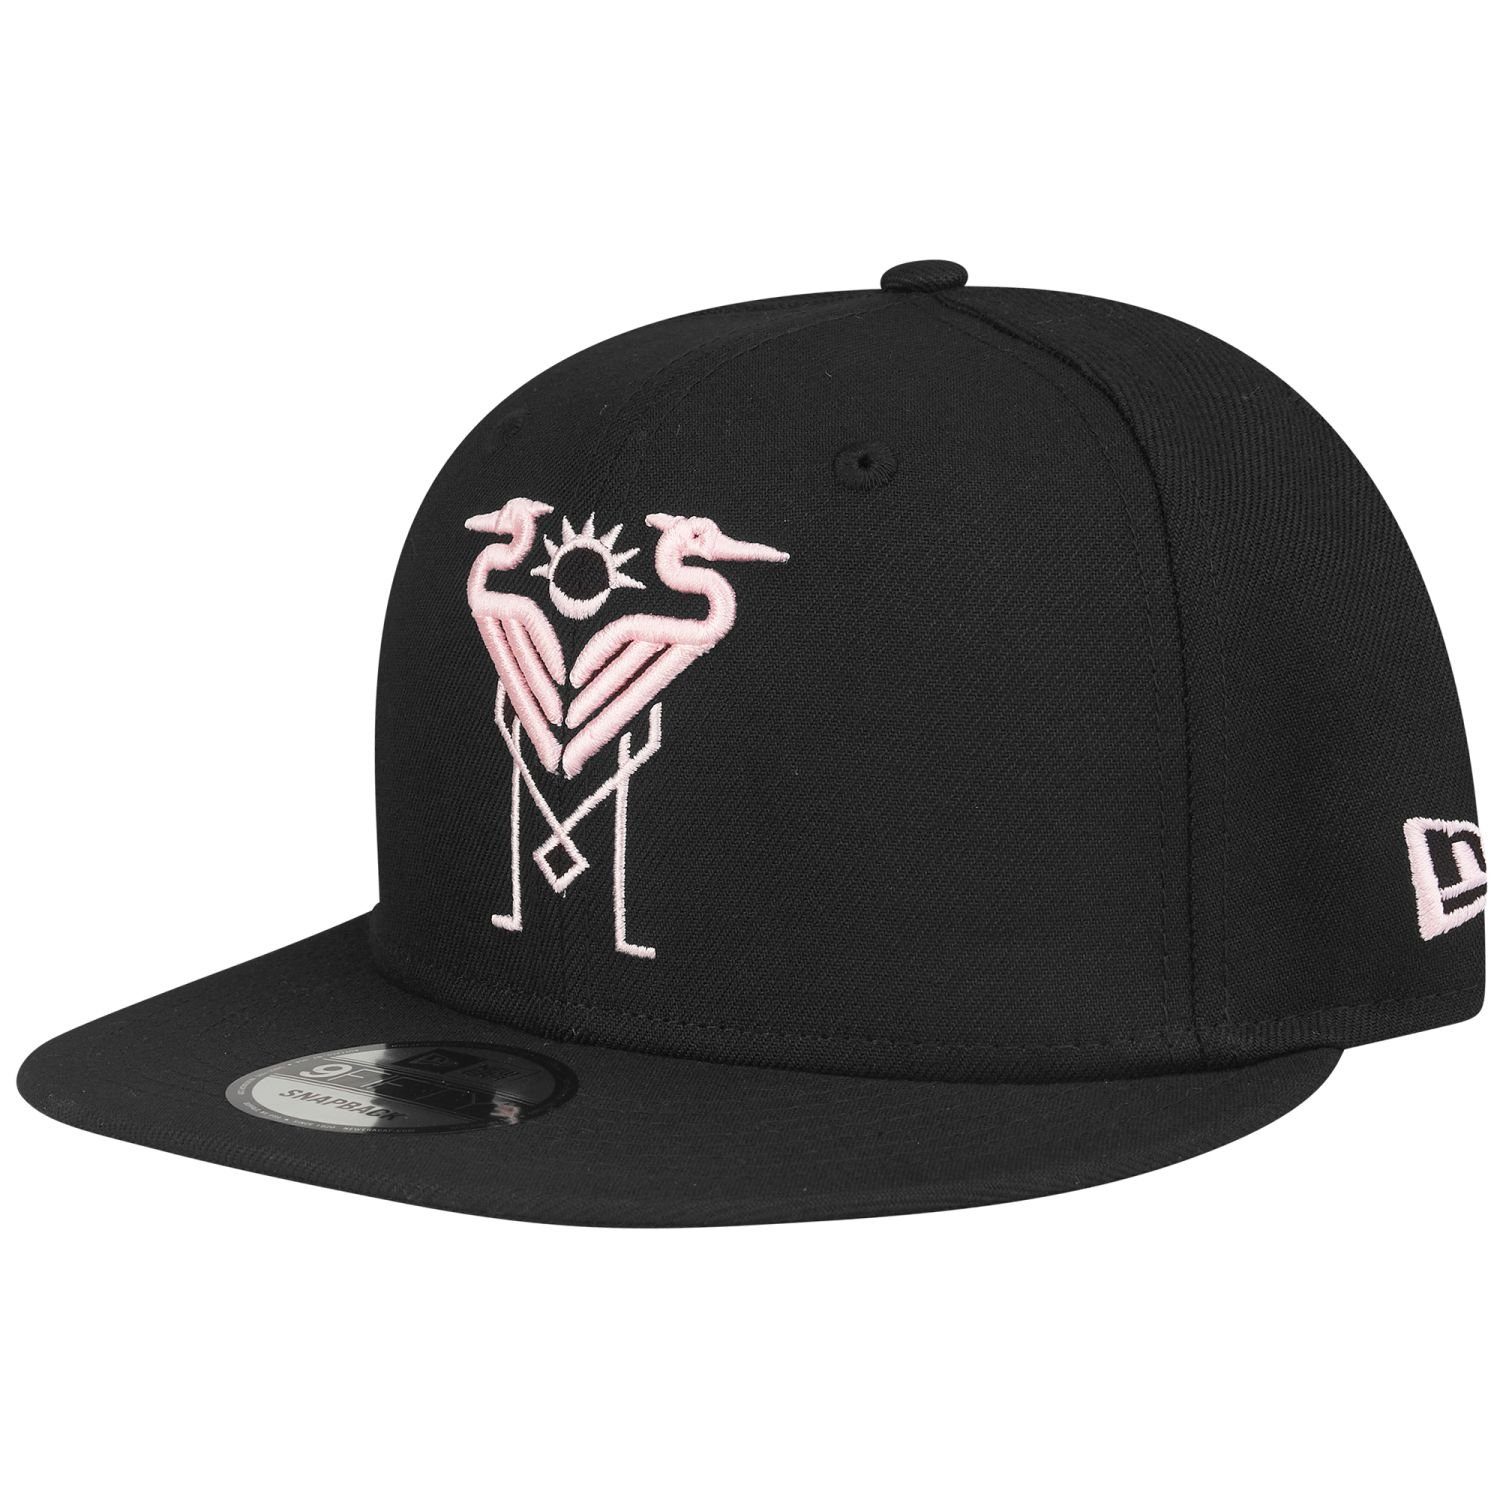 New Era Snapback Cap 9Fifty MLS Inter Miami Flamingo